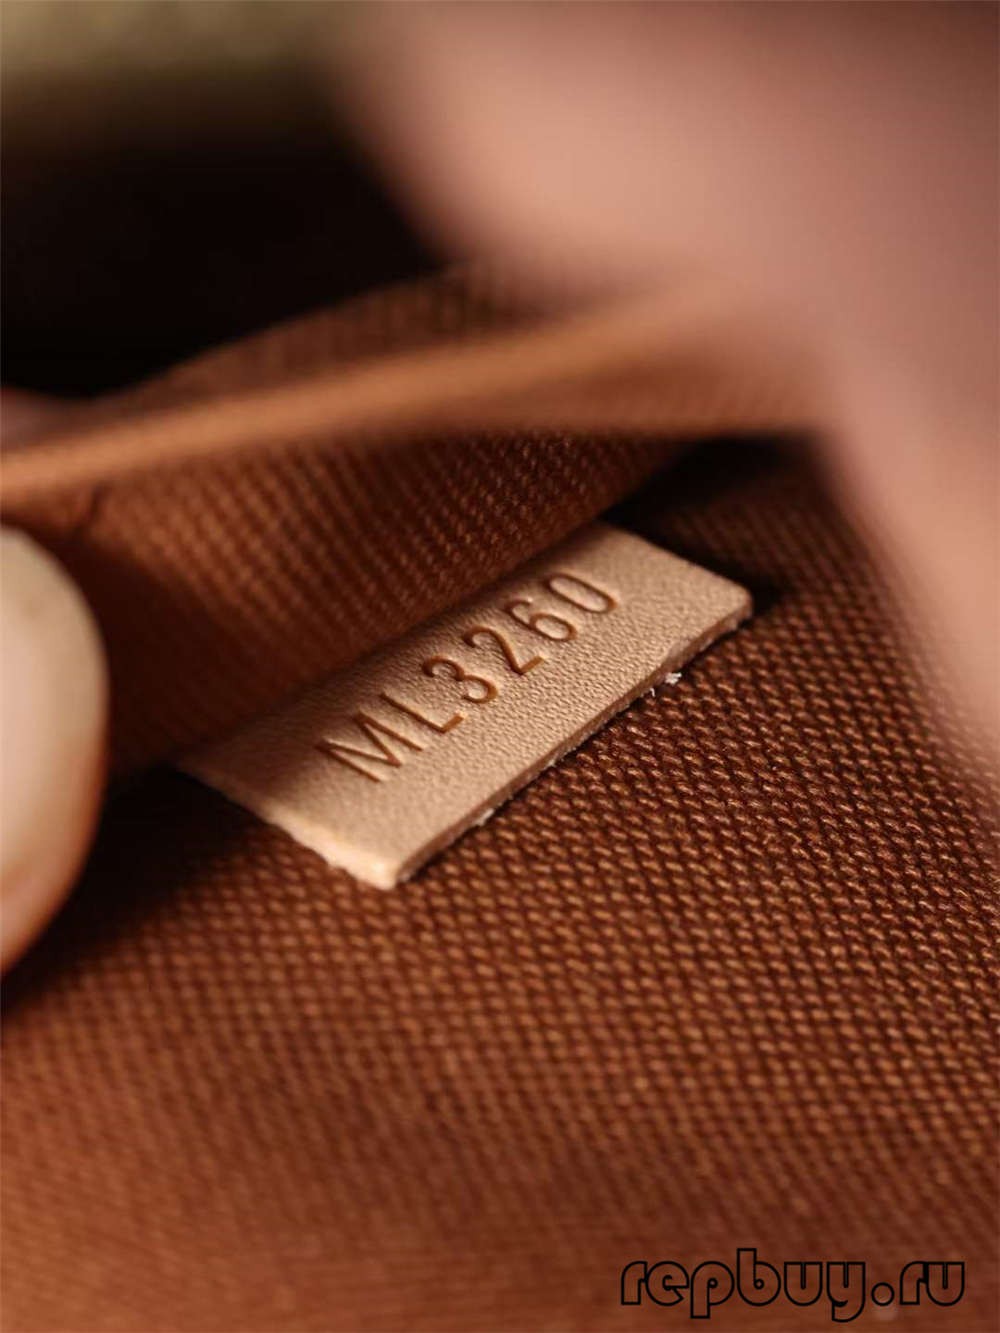 Louis Vuitton M53152 Alma BB กระเป๋าจำลองคุณภาพสูง (2022 พิเศษ) - ร้านค้าออนไลน์กระเป๋าปลอม Louis Vuitton คุณภาพดีที่สุด, นักออกแบบกระเป๋าจำลอง ru